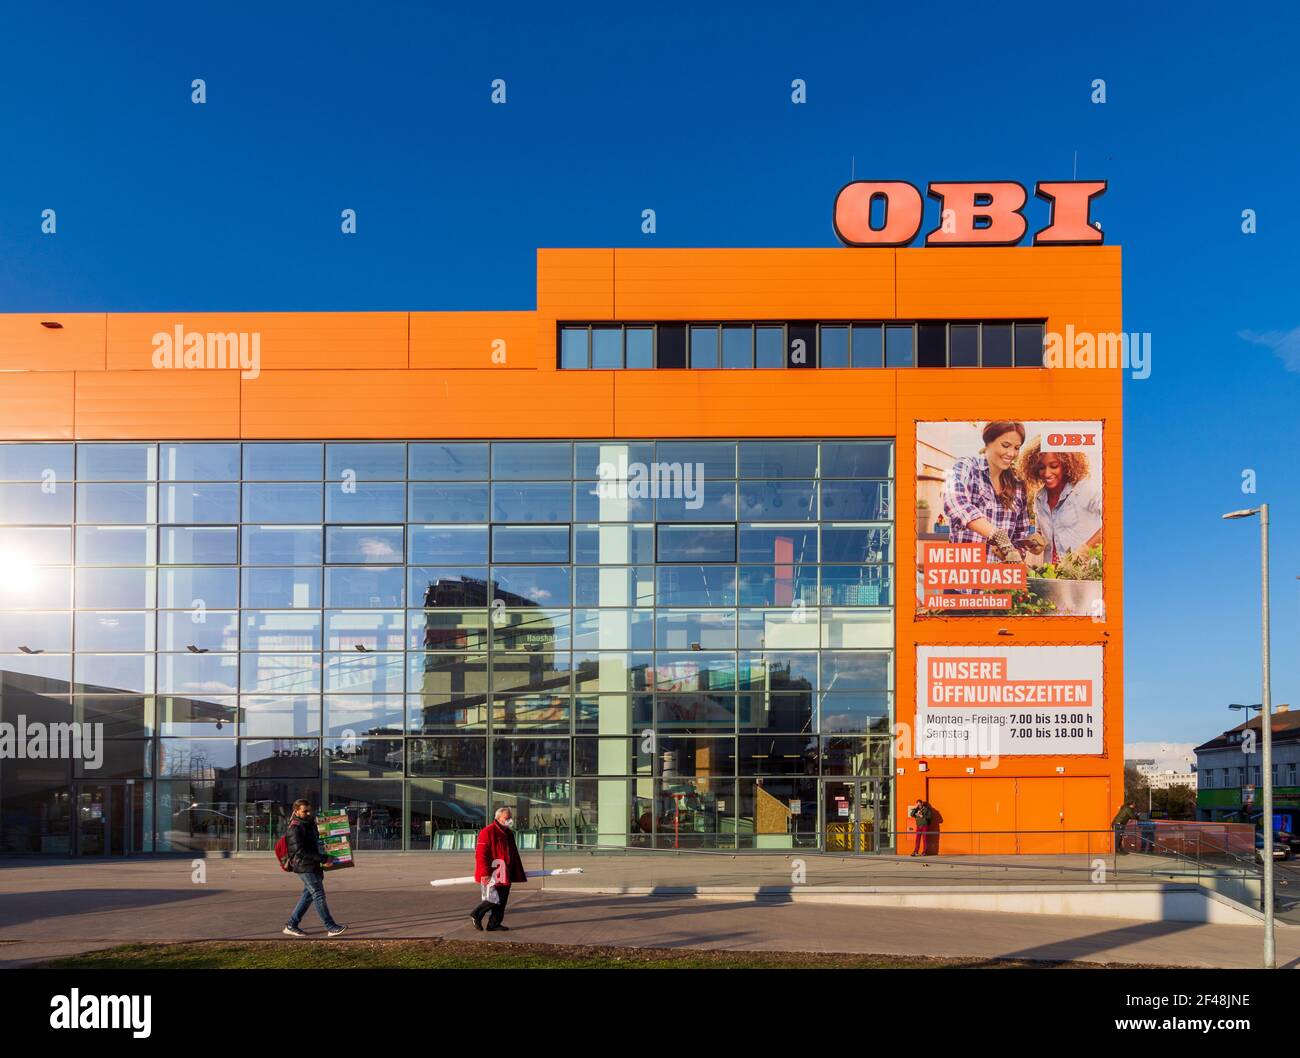 Wien, Wien: OBI Baumarkt 10. Favoriten, Wien, Österreich Stockfotografie -  Alamy